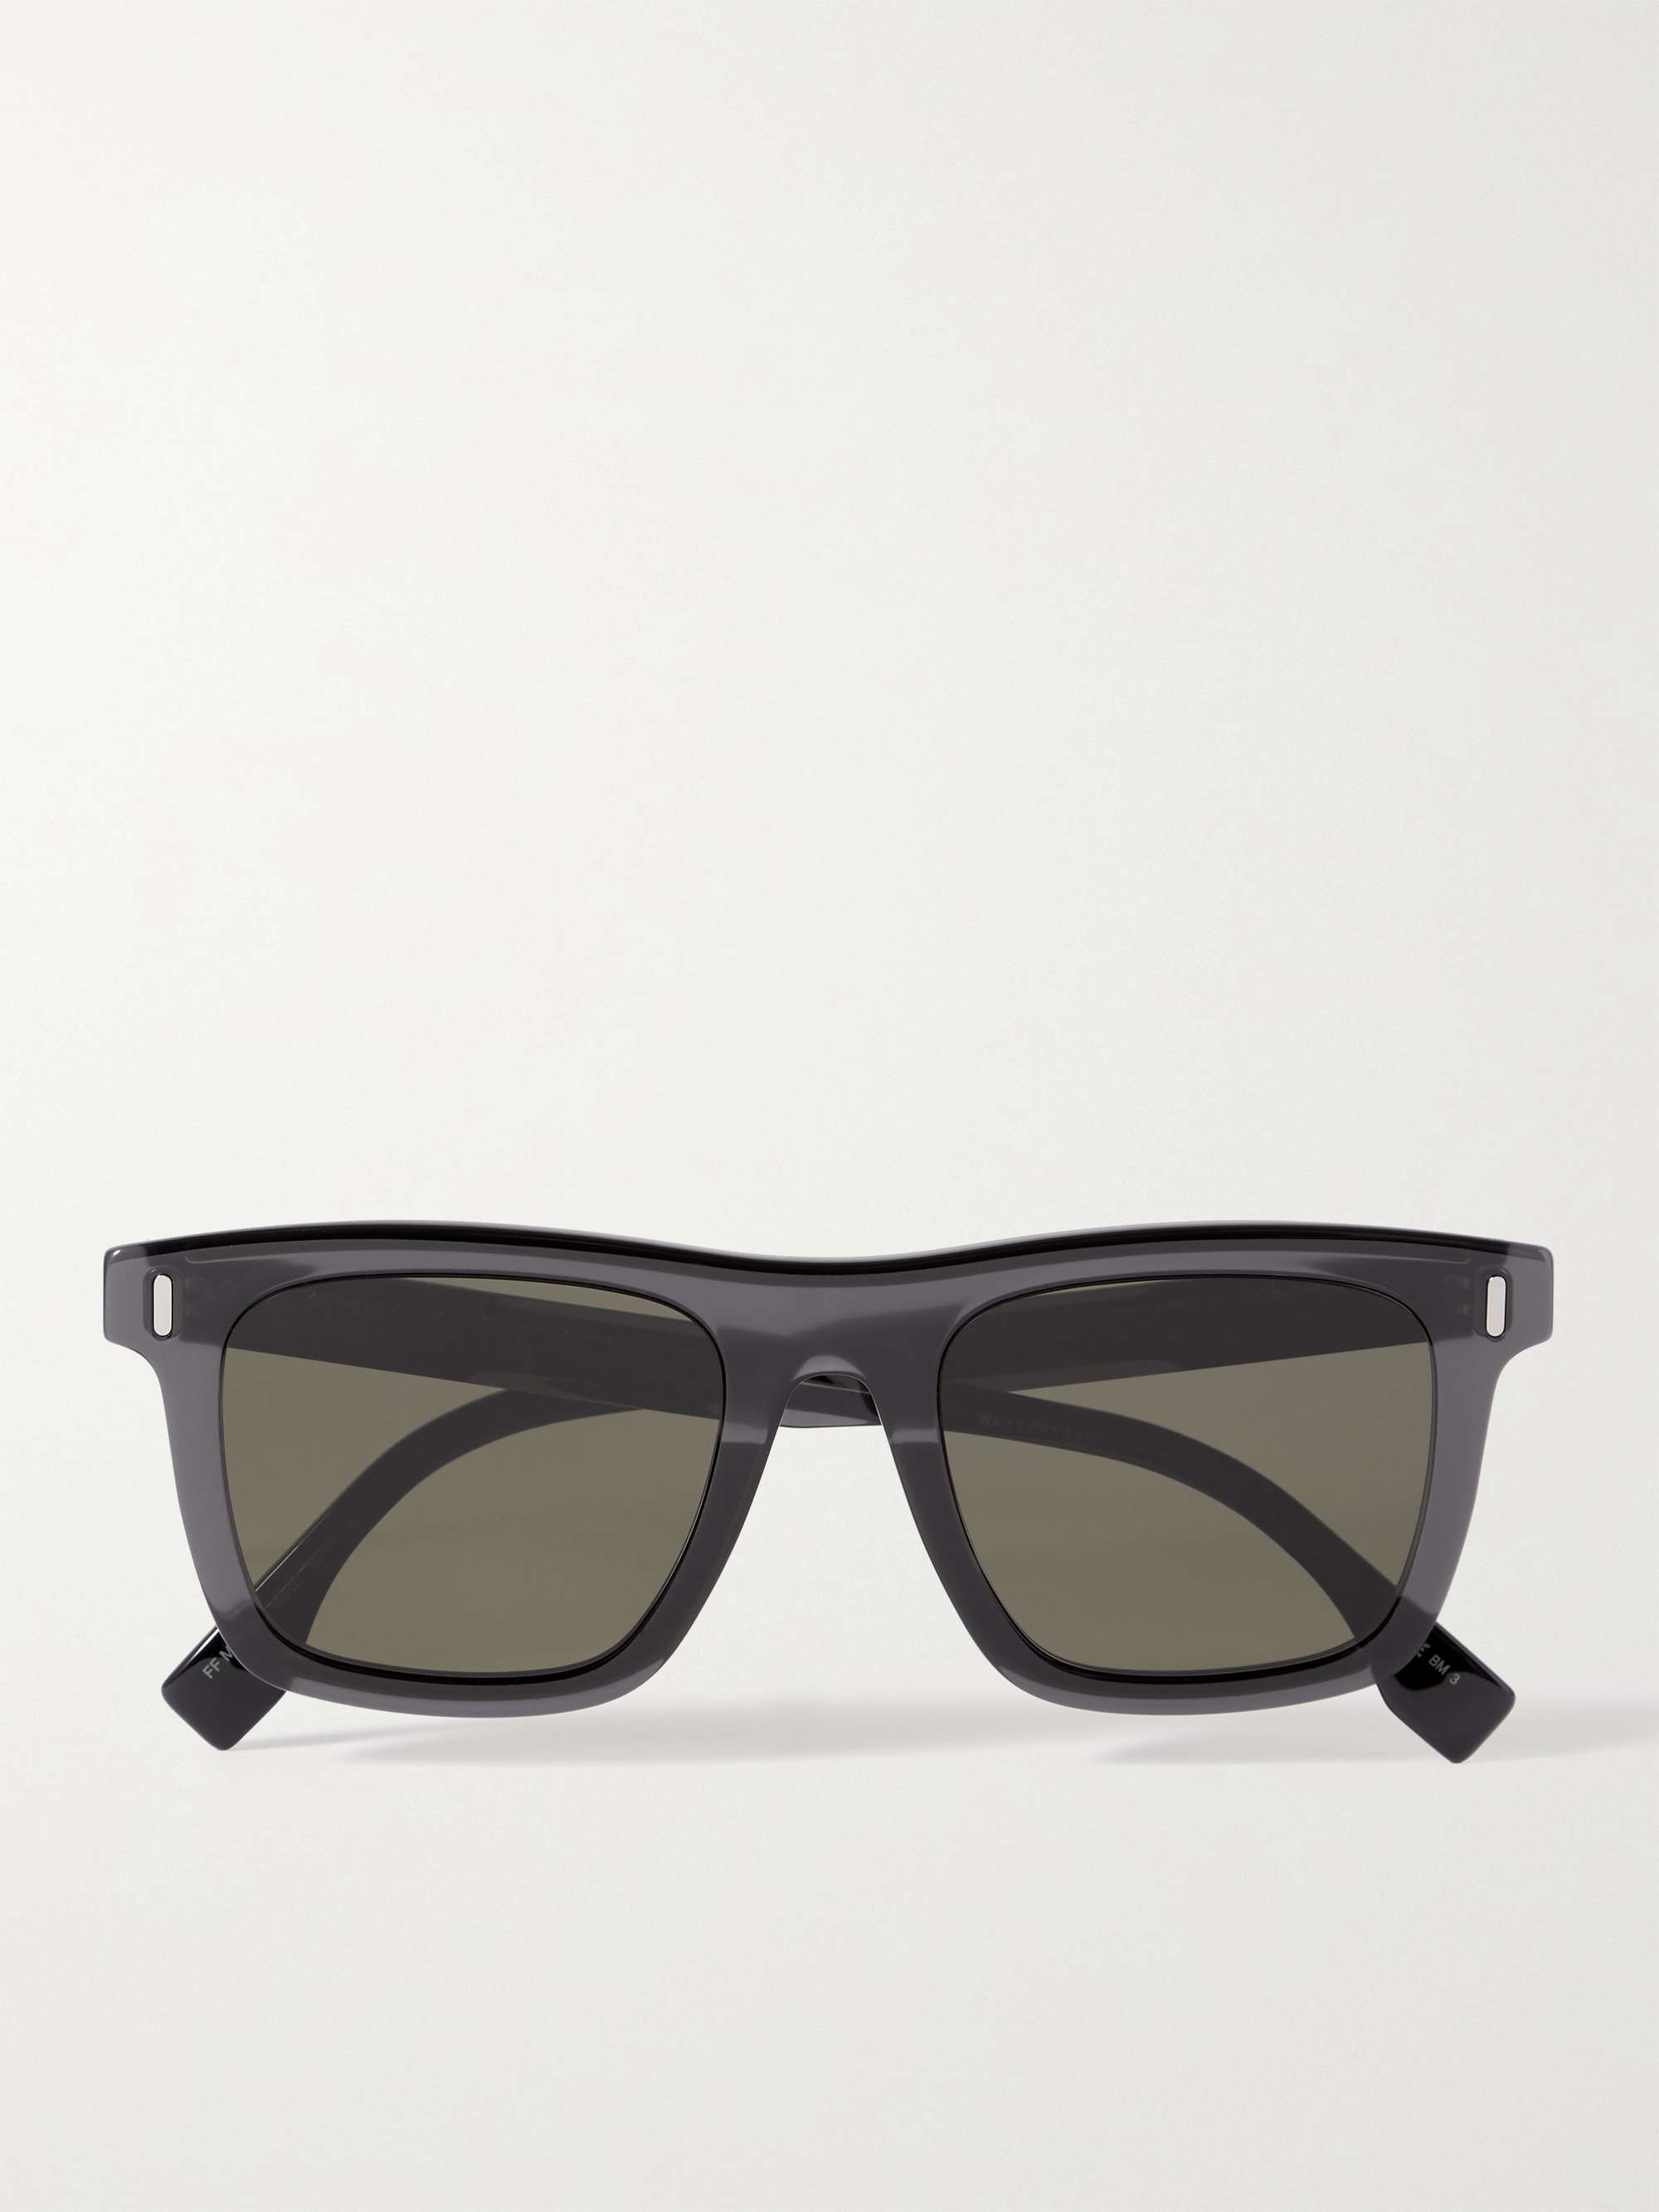 FENDI Square-Frame Tortoiseshell Acetate Sunglasses